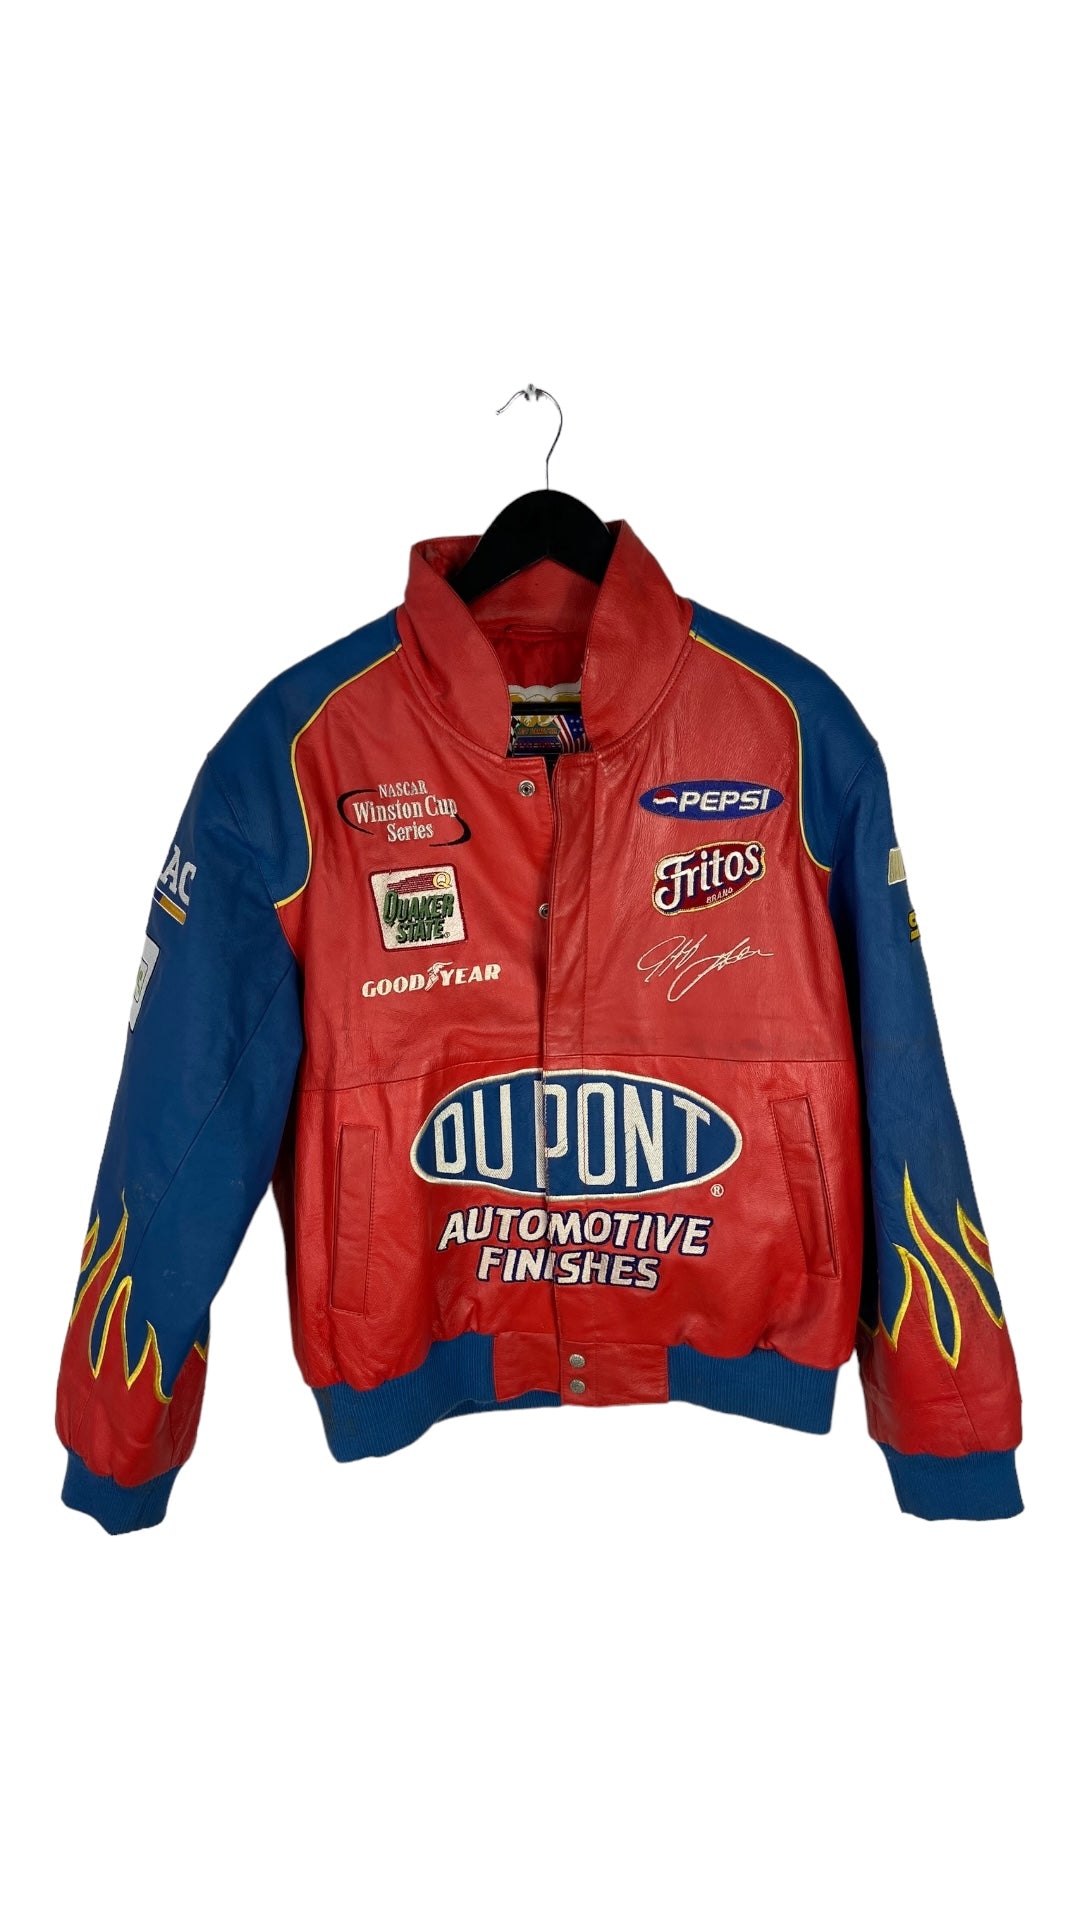 VTG Jeff Gordon Dupont Flame Racing Leather Jacket Sz Med